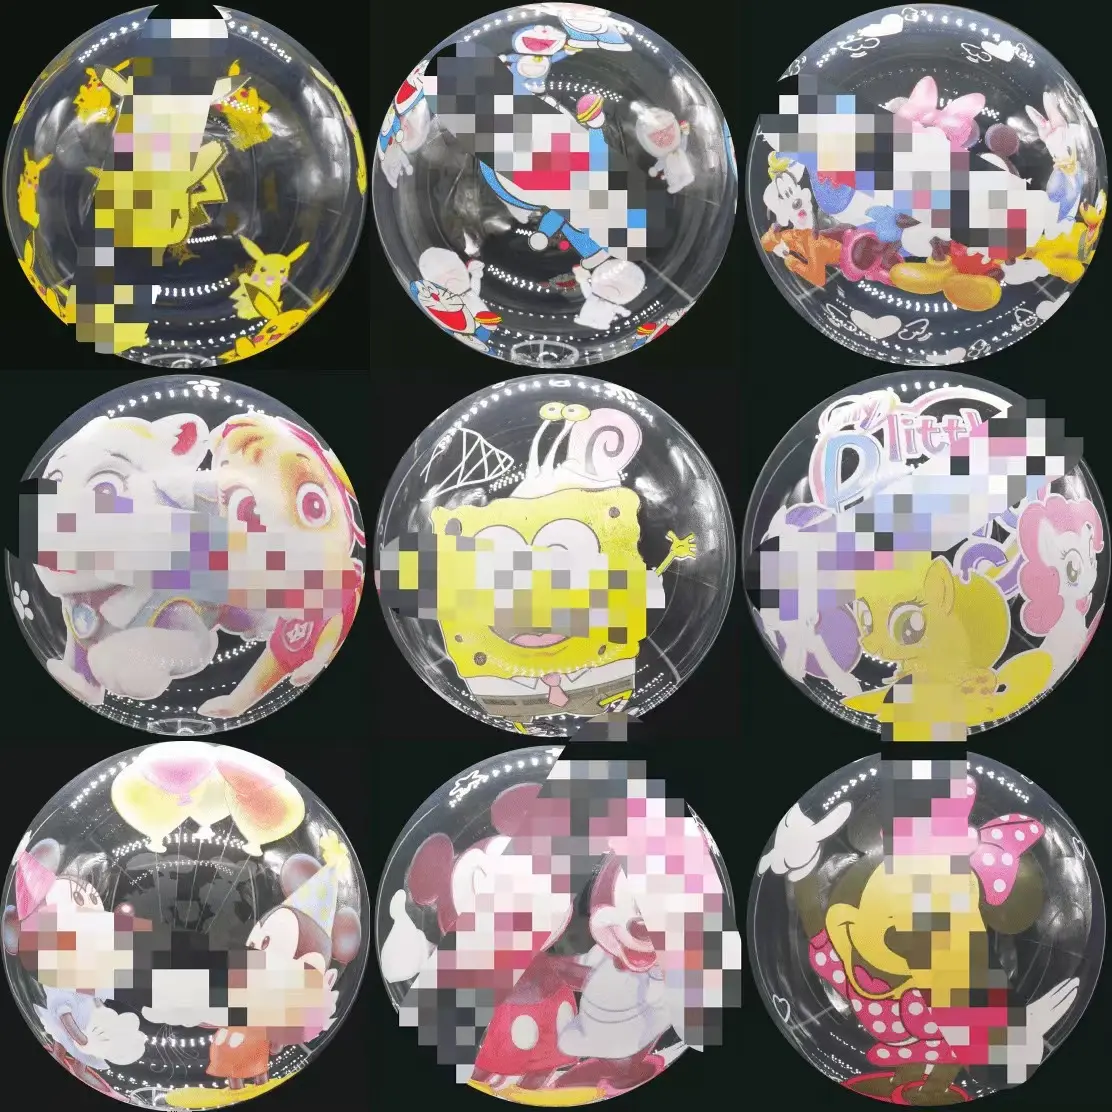 Palloncini BOBO palloncini trasparenti in PVC stampa cartone animato 24 pollici modello decorazione del partito scena Bobo palloncino